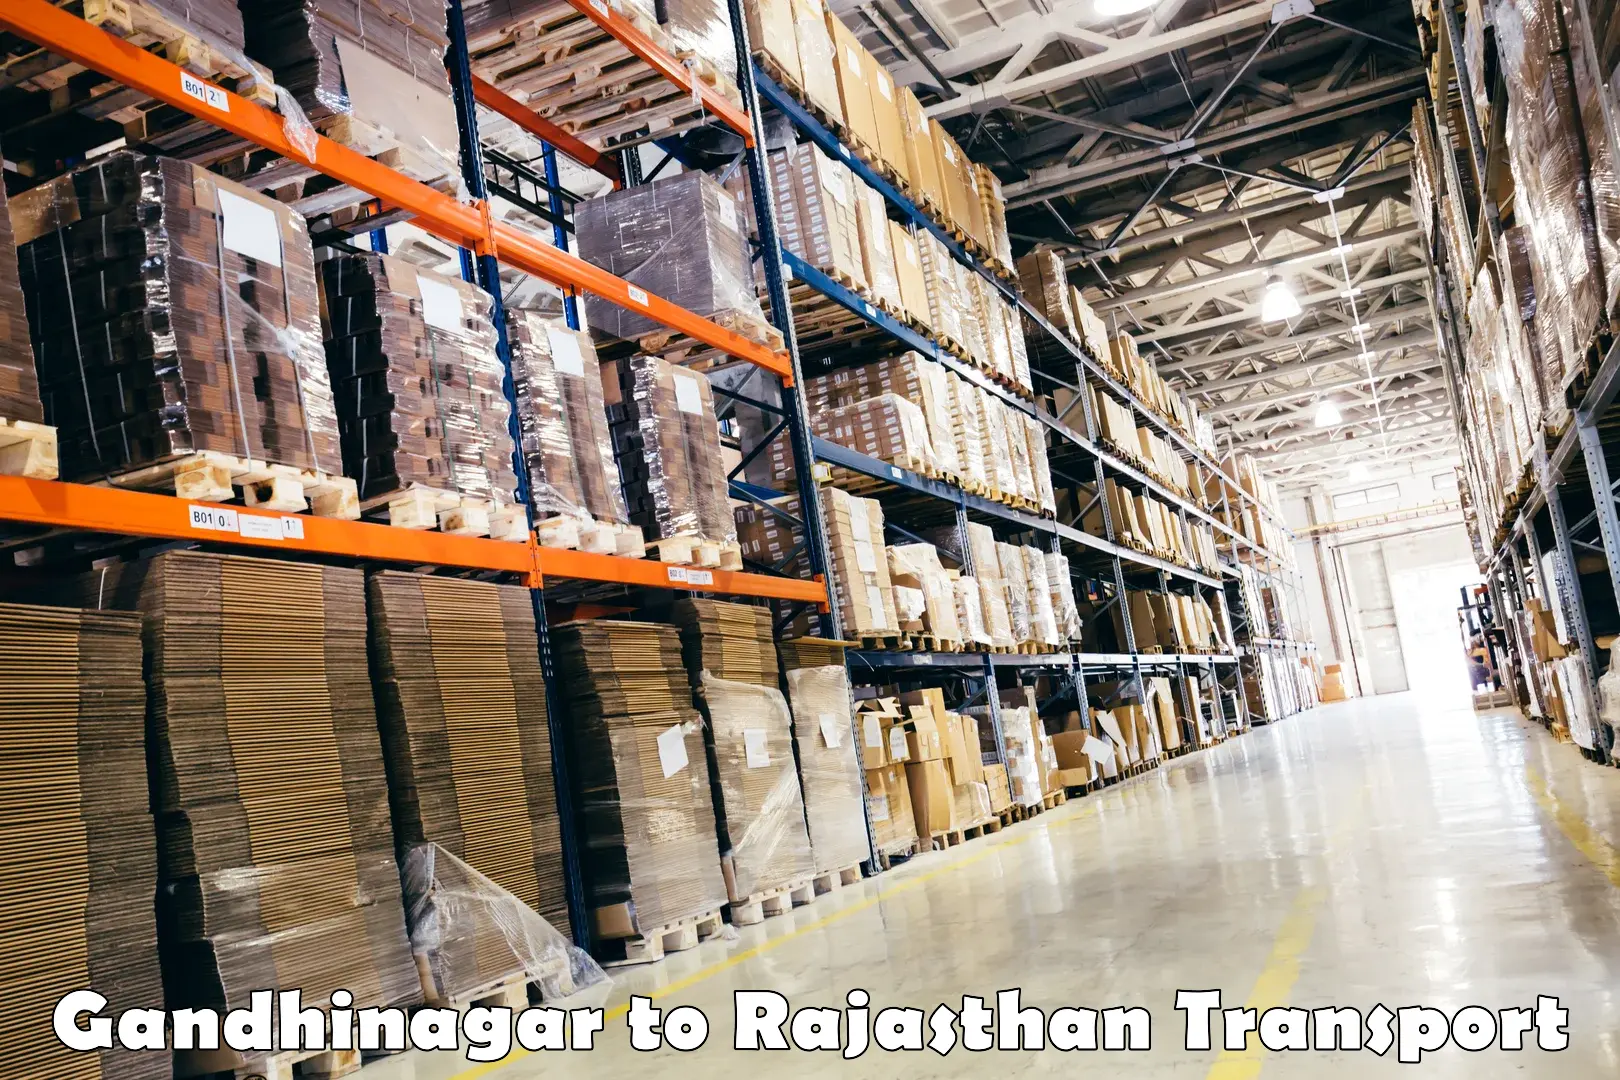 Luggage transport services Gandhinagar to Rajasthan